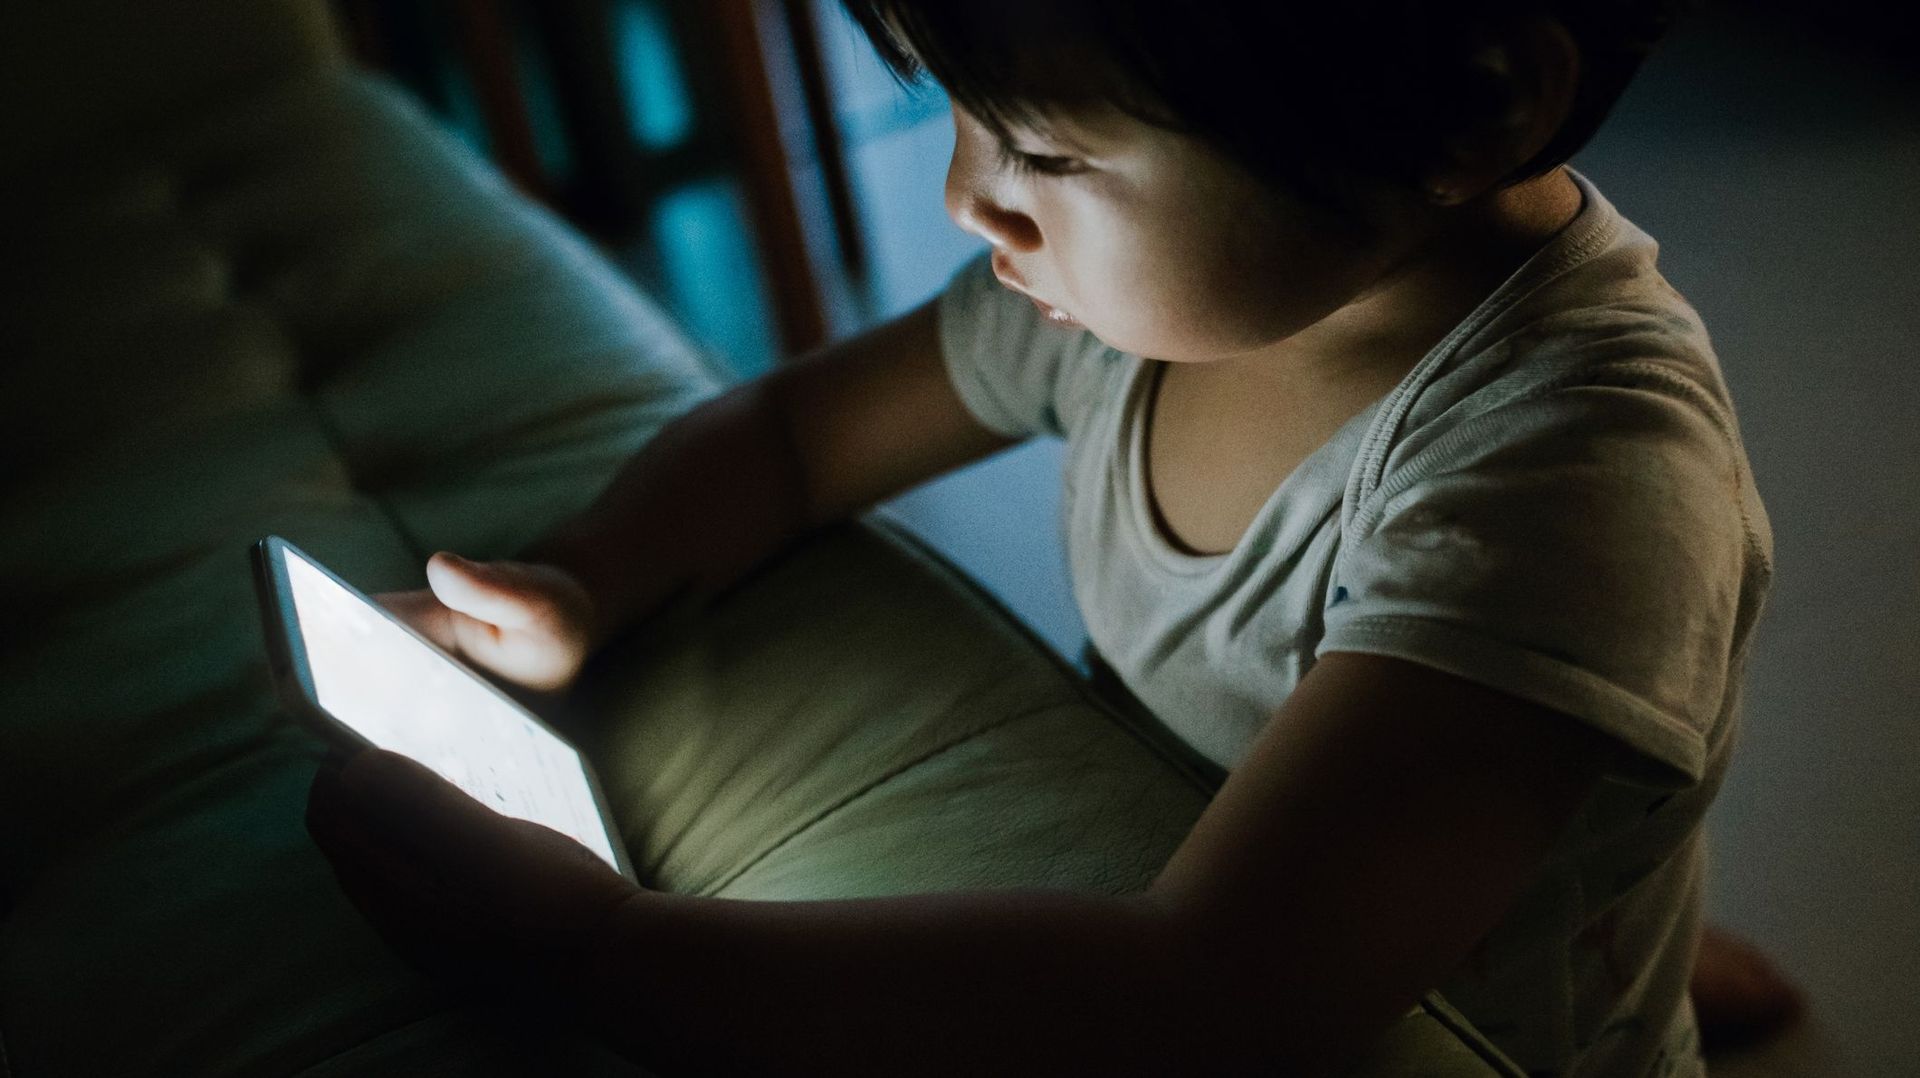 87% des enfants regardent trop les écrans avant de dormir.